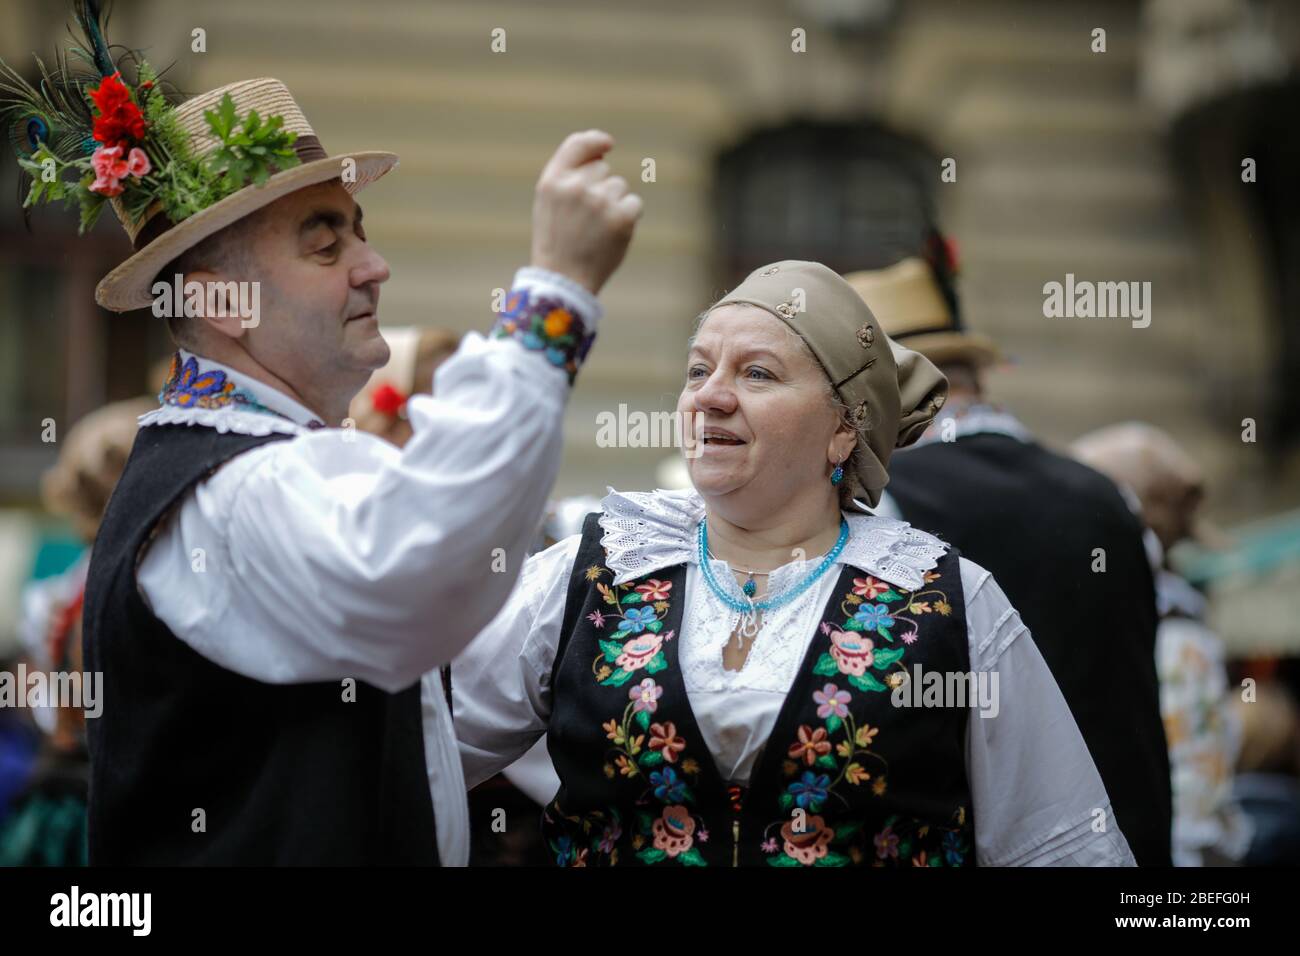 Bucarest, Romania - 5 marzo 2020: Donne e uomini anziani, vestiti con abiti tradizionali rumeni, ballano in un festival. Foto Stock